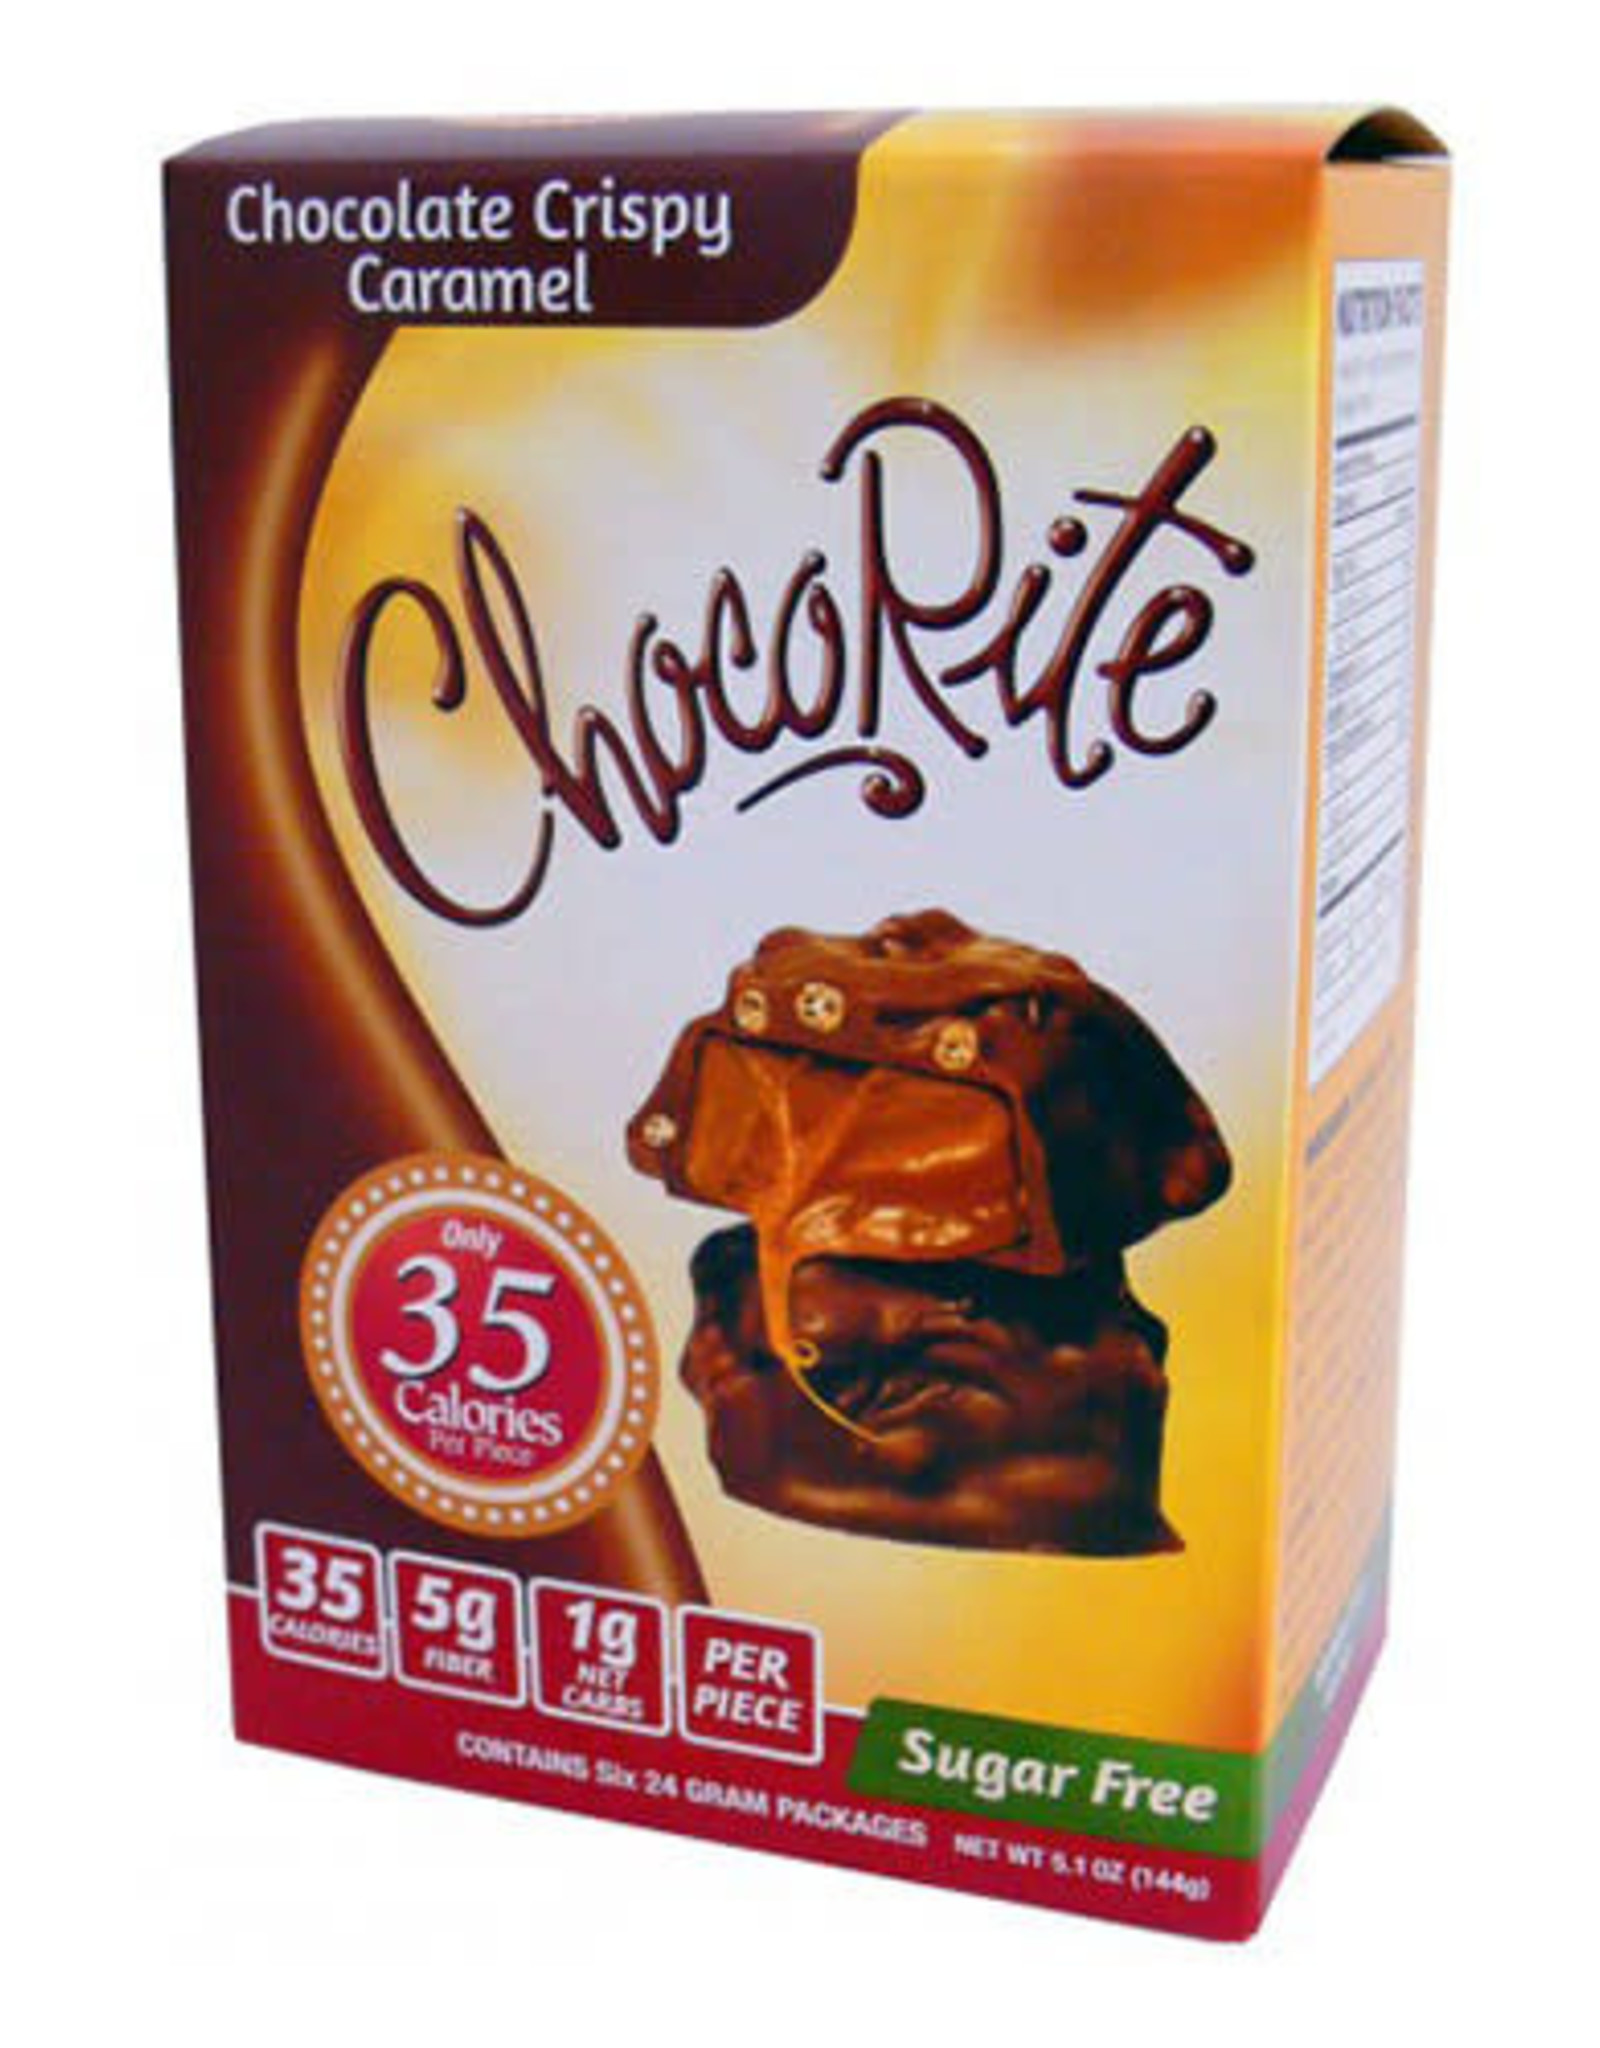 ChocoRite ChocoRite 6 pck Choc Crispy Caramel